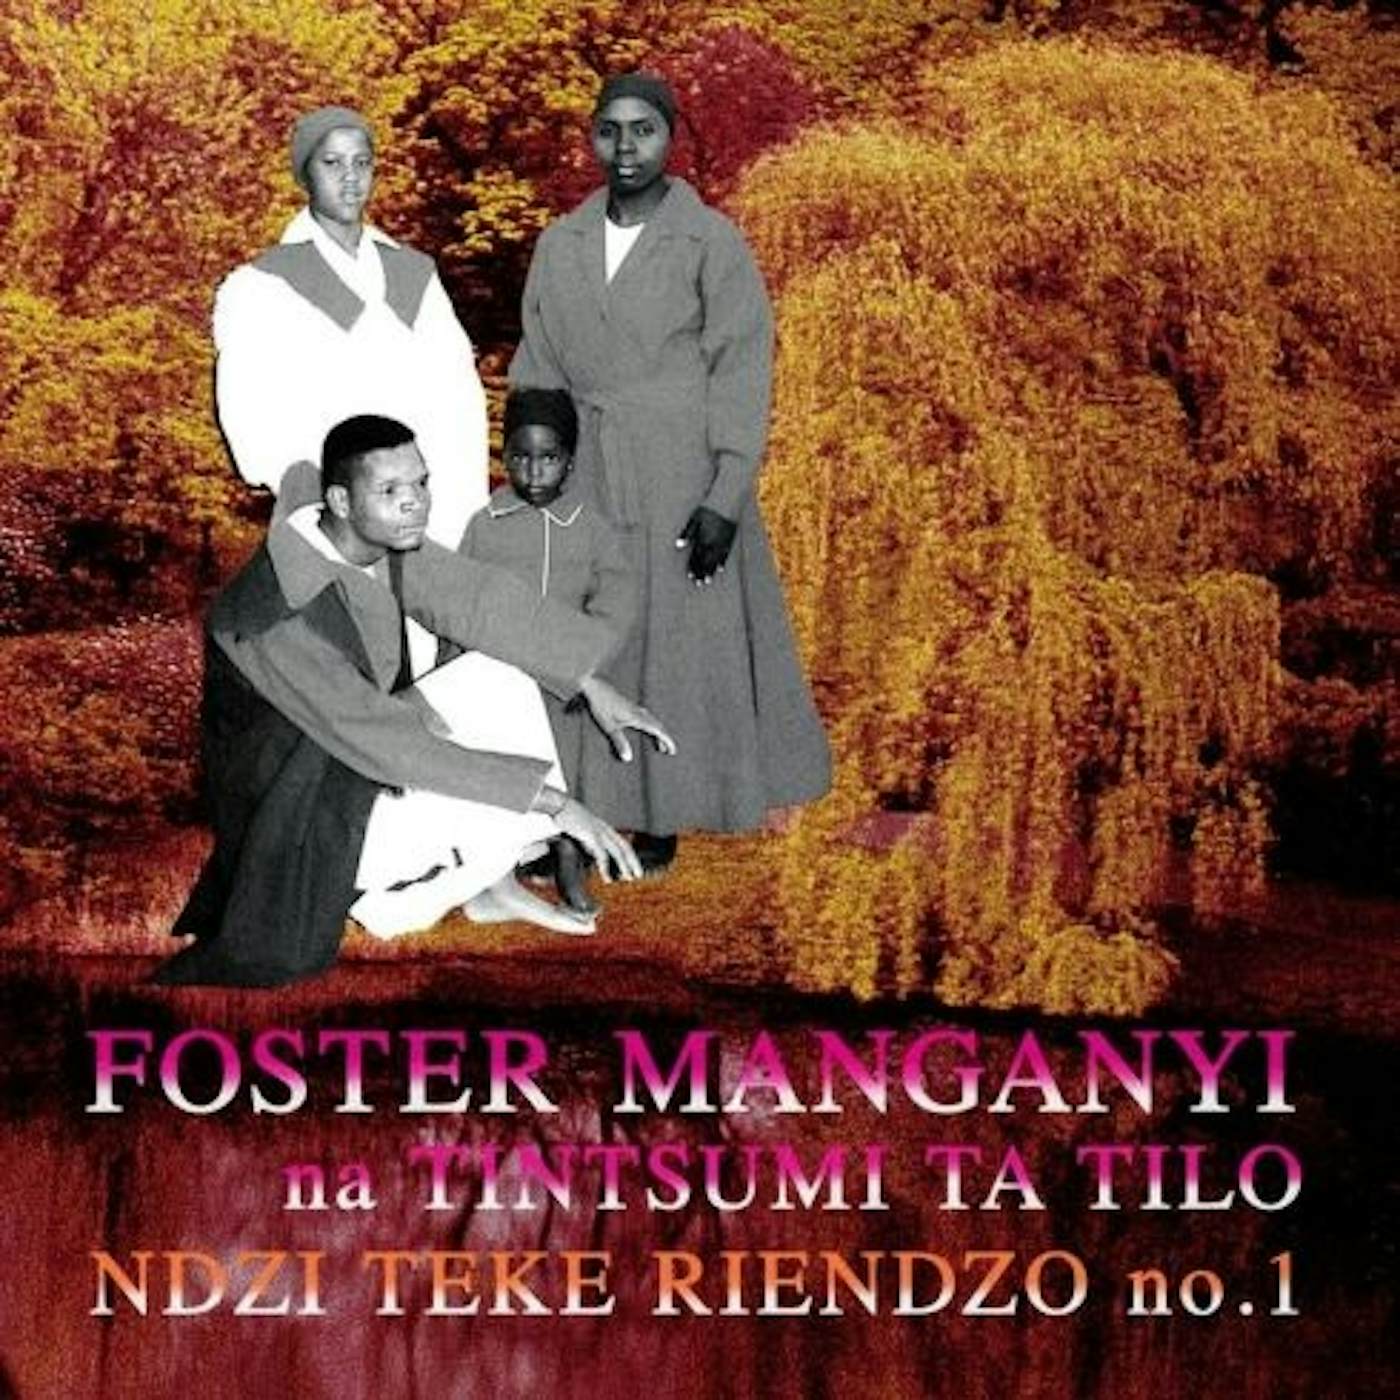 Foster Manganyi NDZI TEKE RIENDZO 1 Vinyl Record